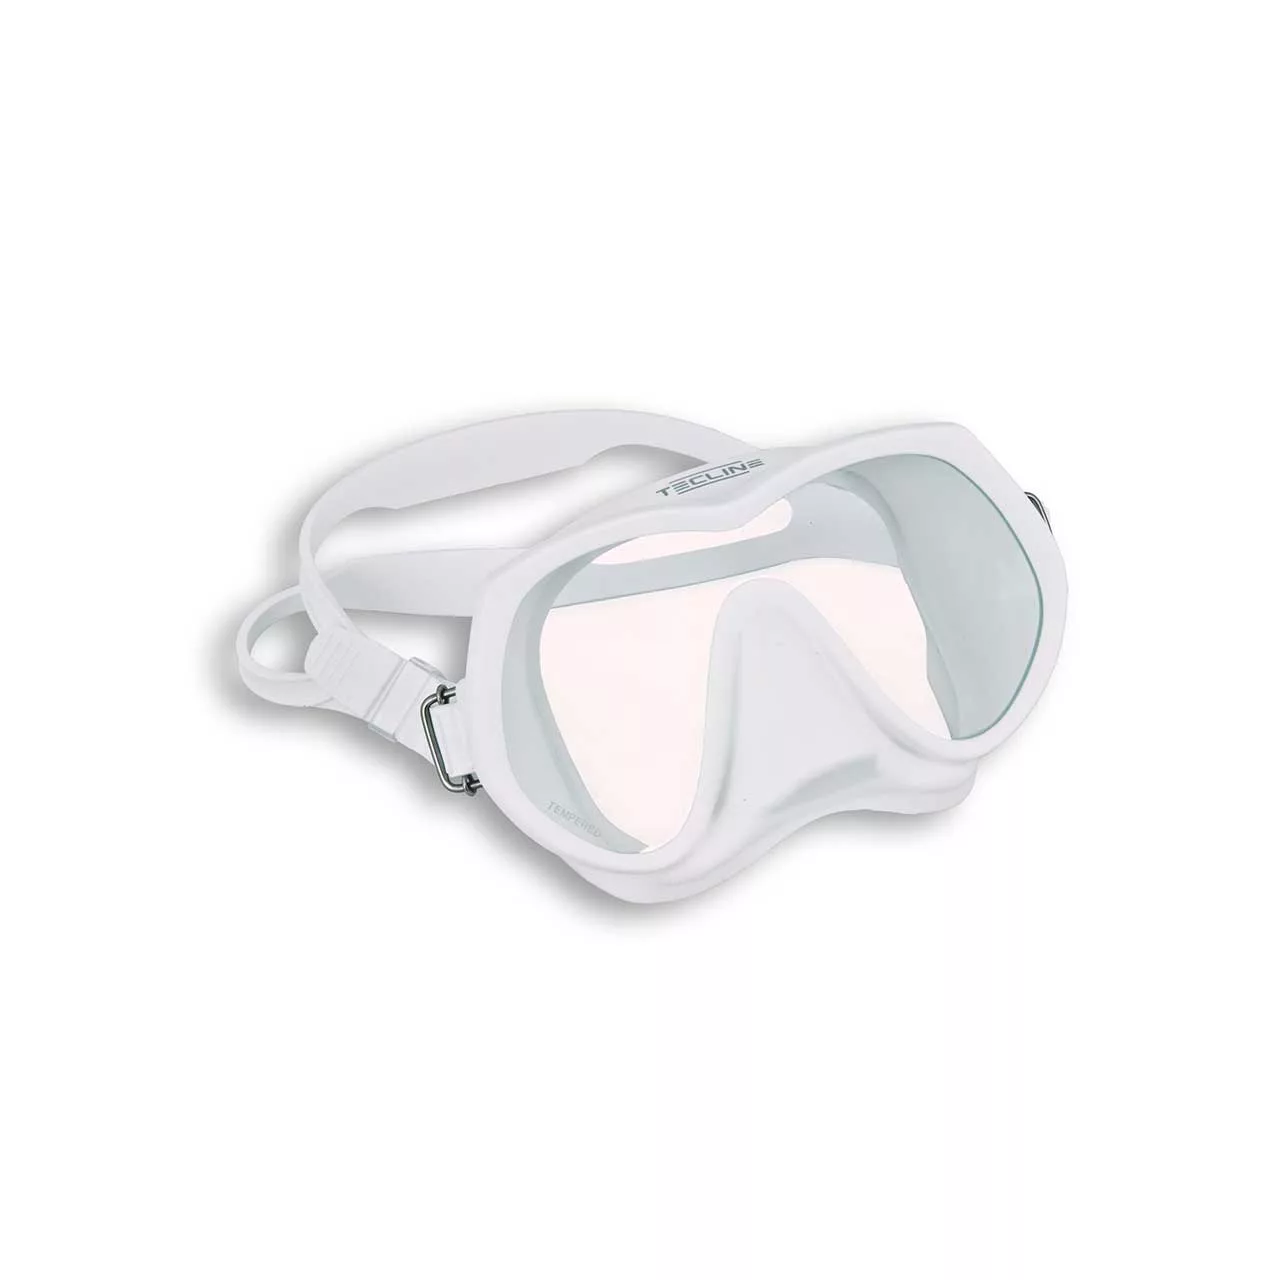 Tecline Frameless Superview Mask - White T05061